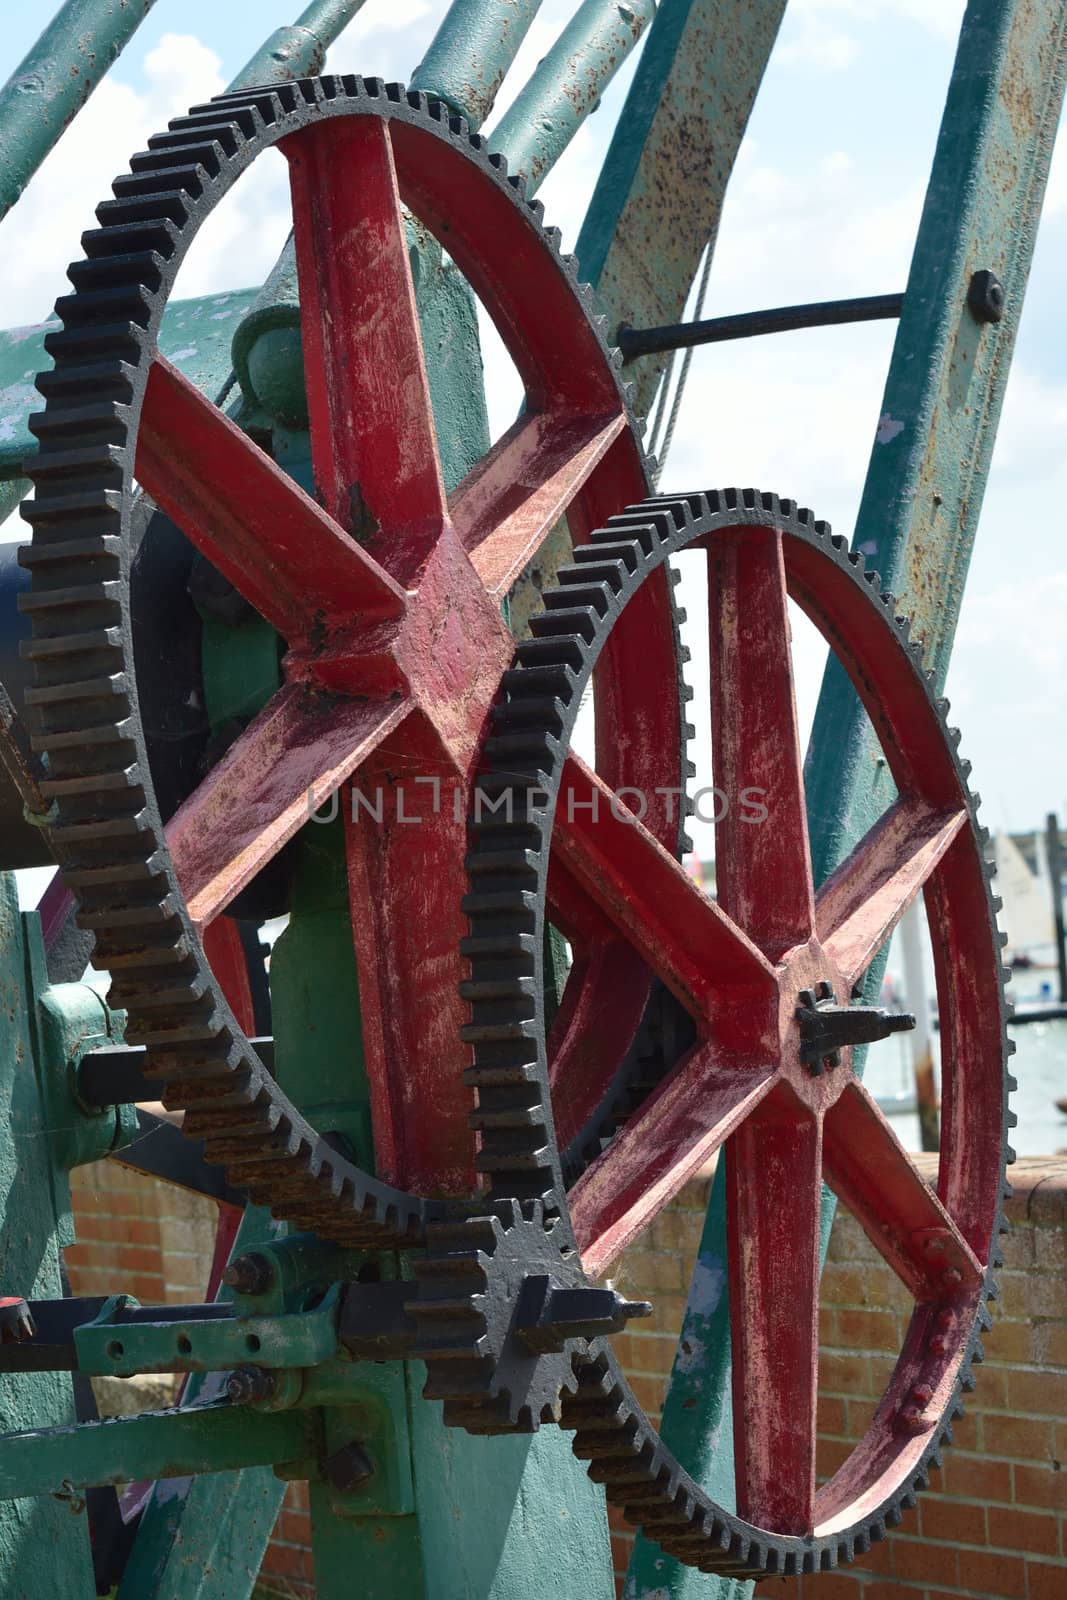 Large metal cog wheels